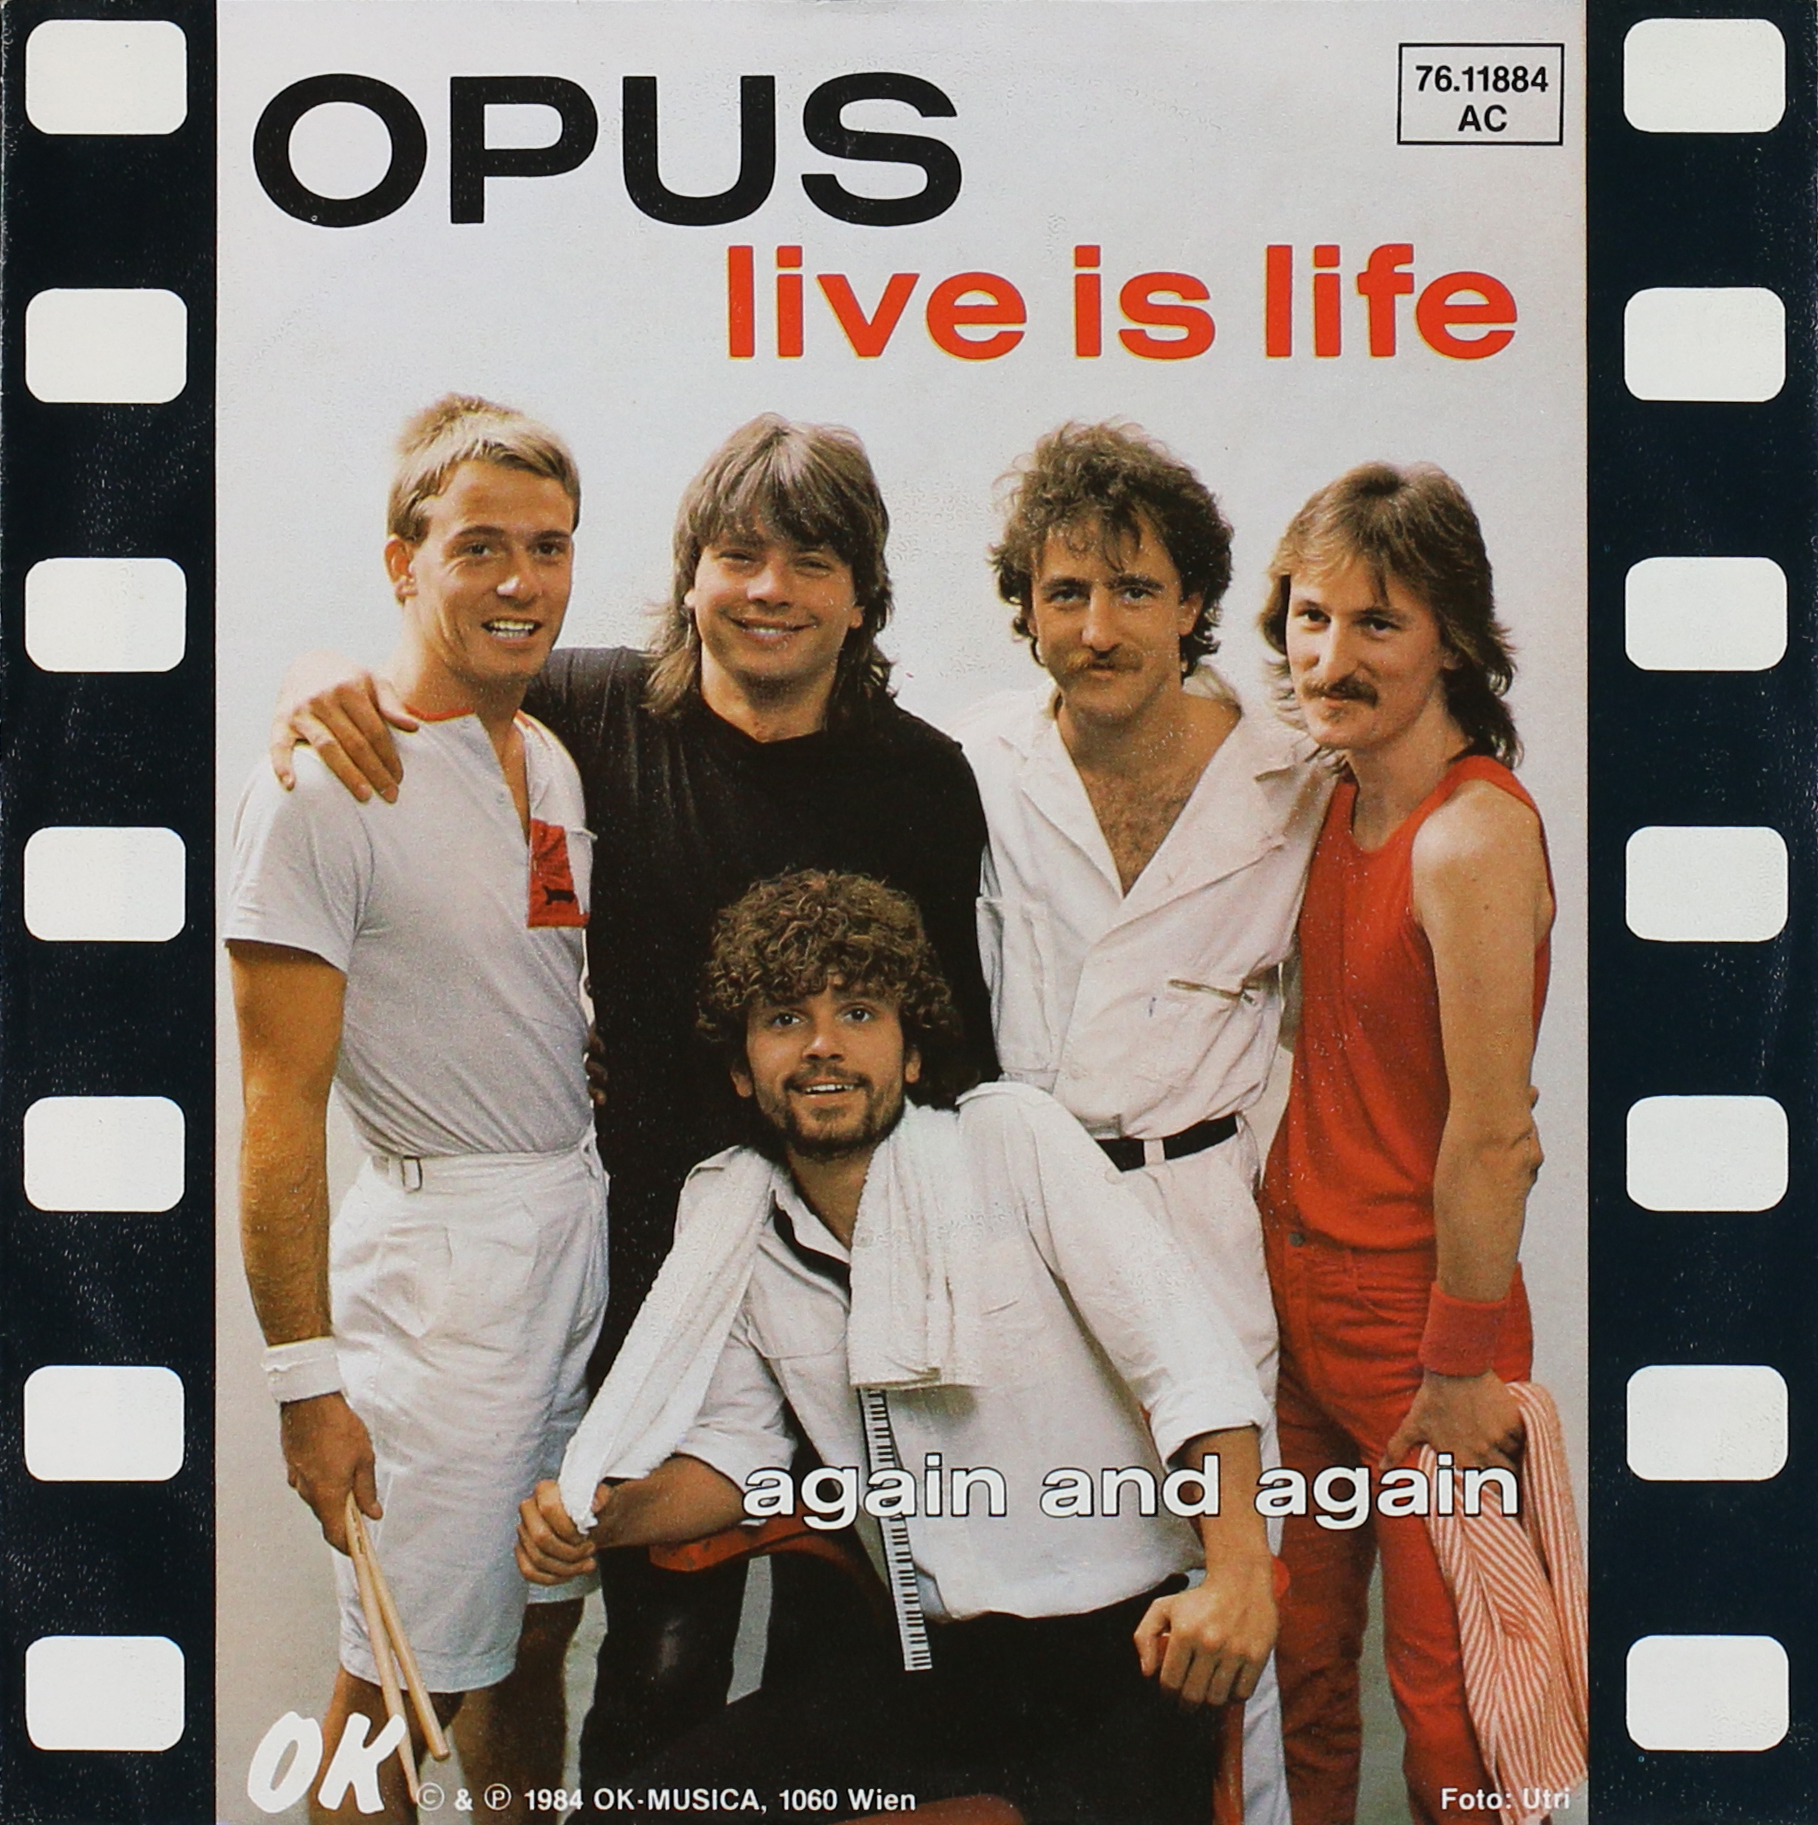 Песня группы life. Группа опус Life is Life. Opus Live is Life обложка. Opus альбомы. Opus, Opus Live is Life обложка.